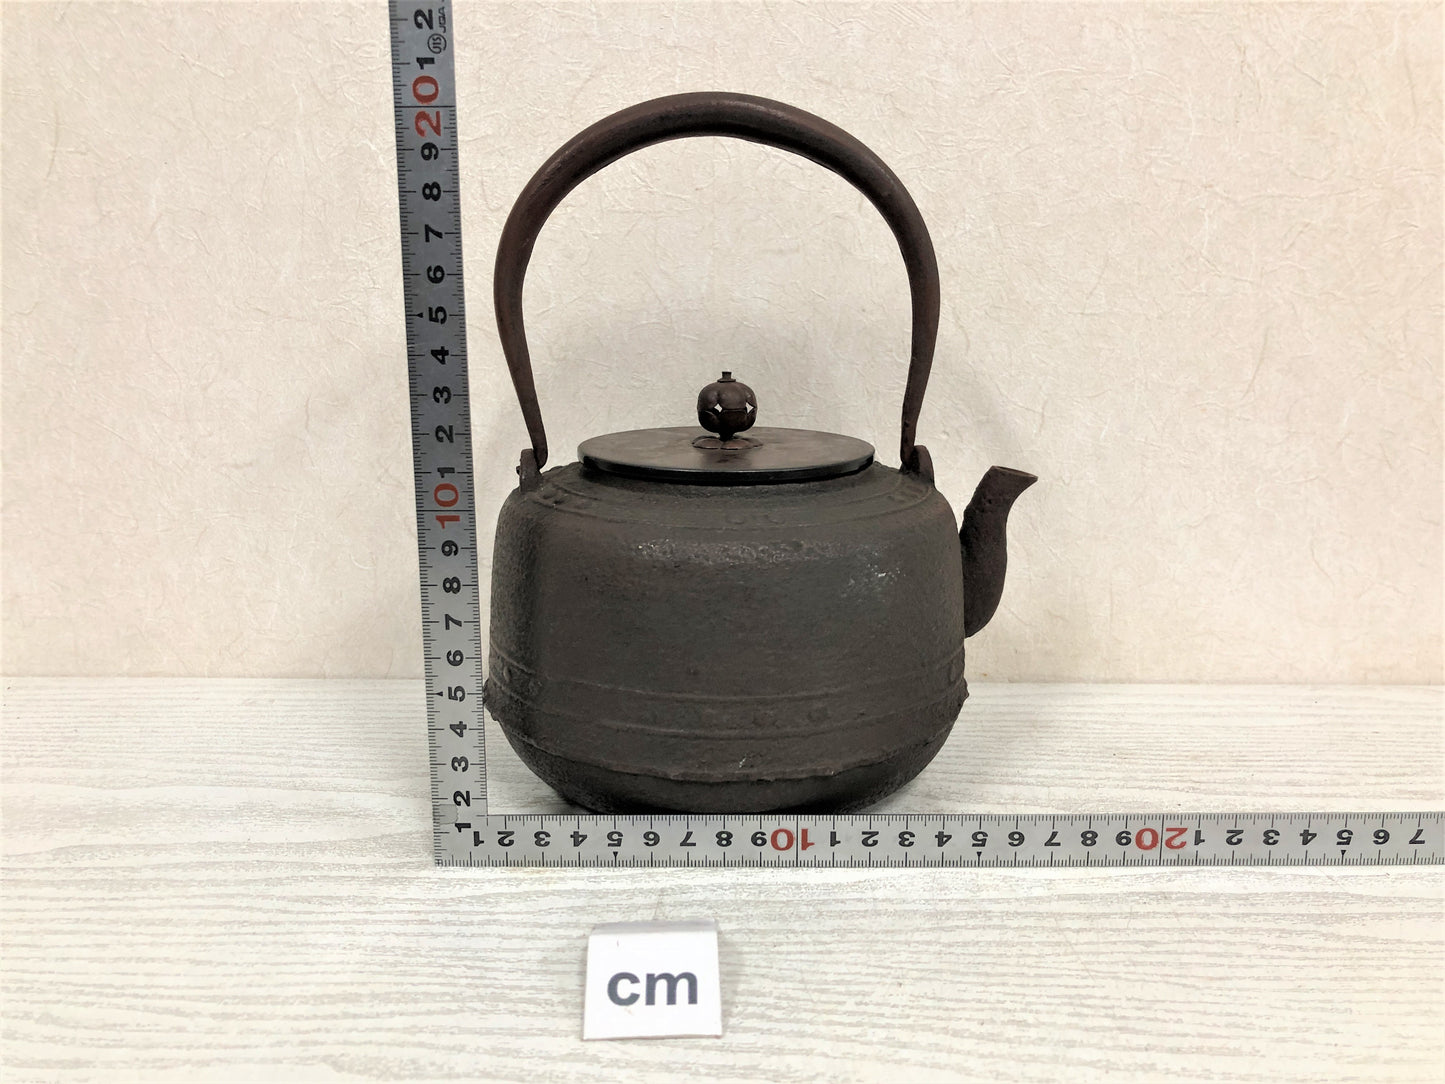 Y3869 TETSUBIN Iron pot Copper lid Iron Tea Kettle Teapot Japan antique kitchen